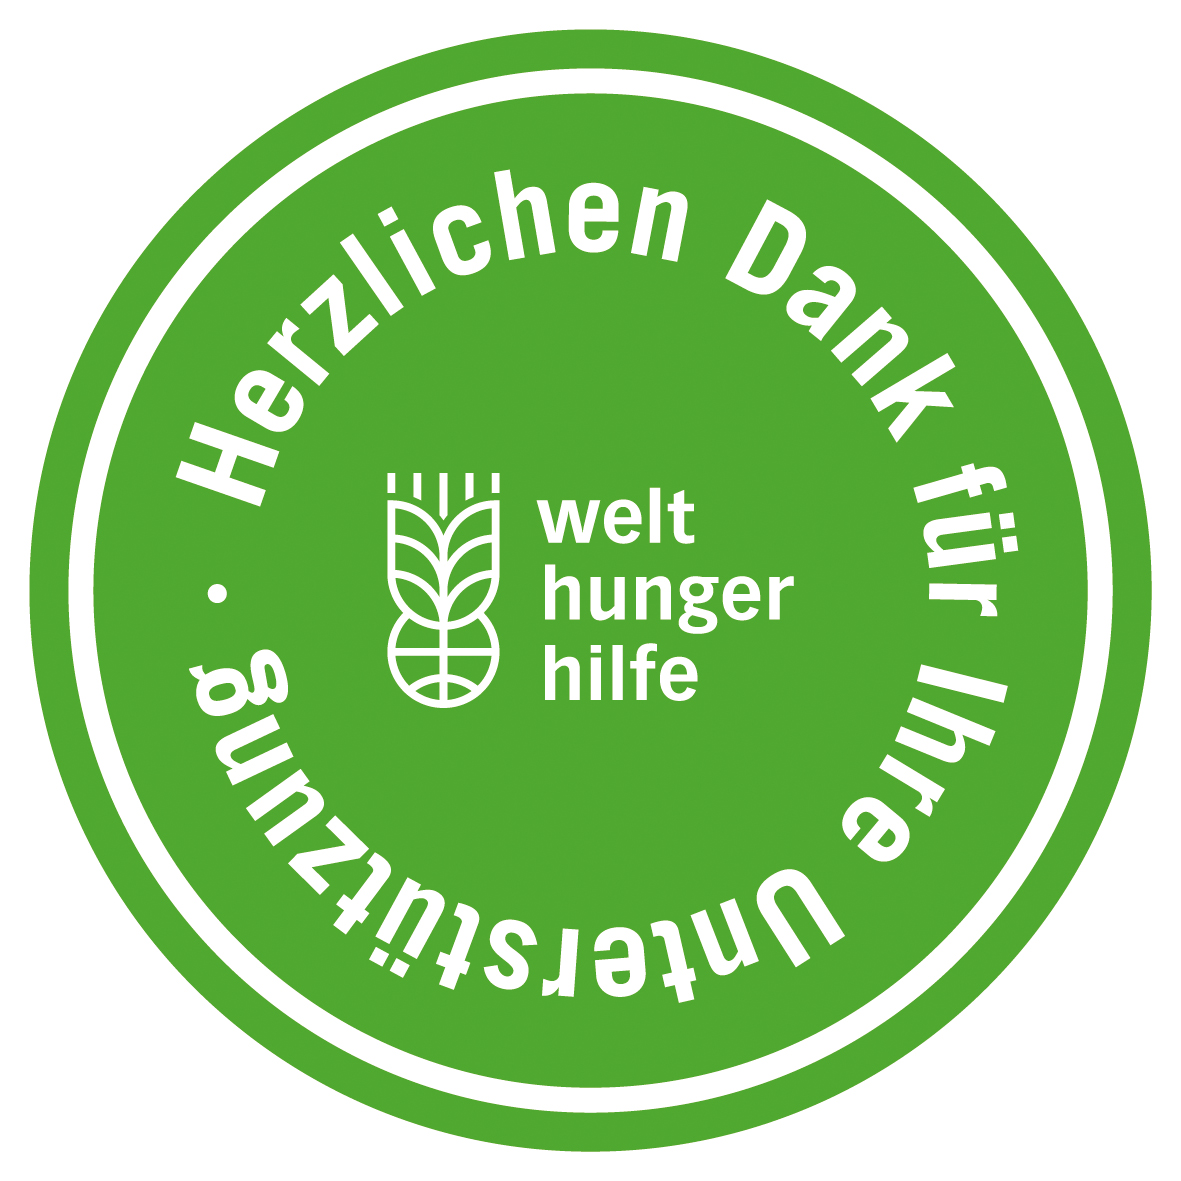 Deutsche Welthungerhilfe e. V.